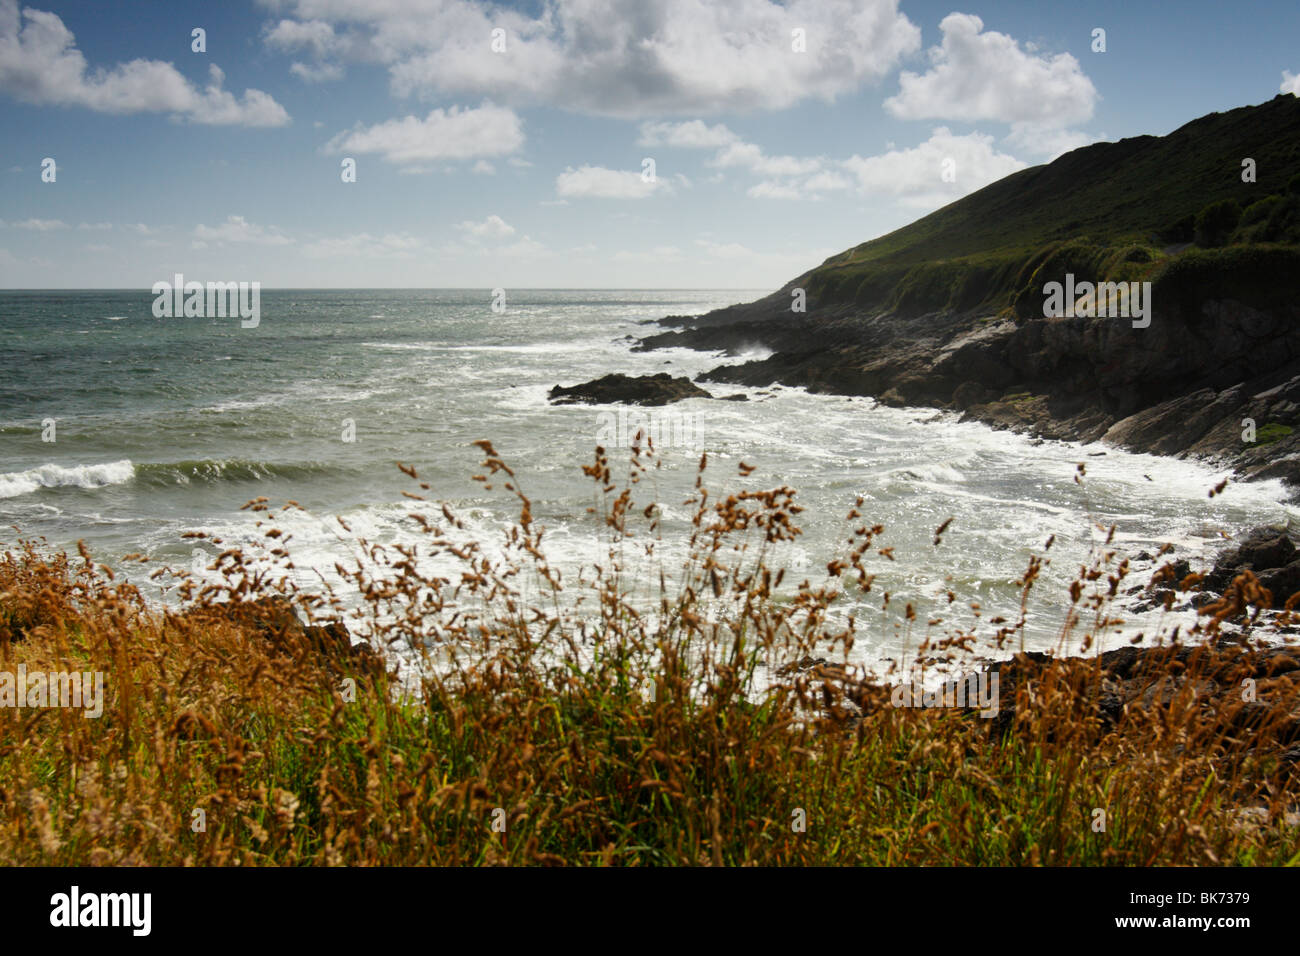 Limeslade Bay, una playa pequeña en la Península de Gower cerca de Mumbles y Swansea, West Glamorgan, al sur de Gales, Reino Unido. Foto de stock